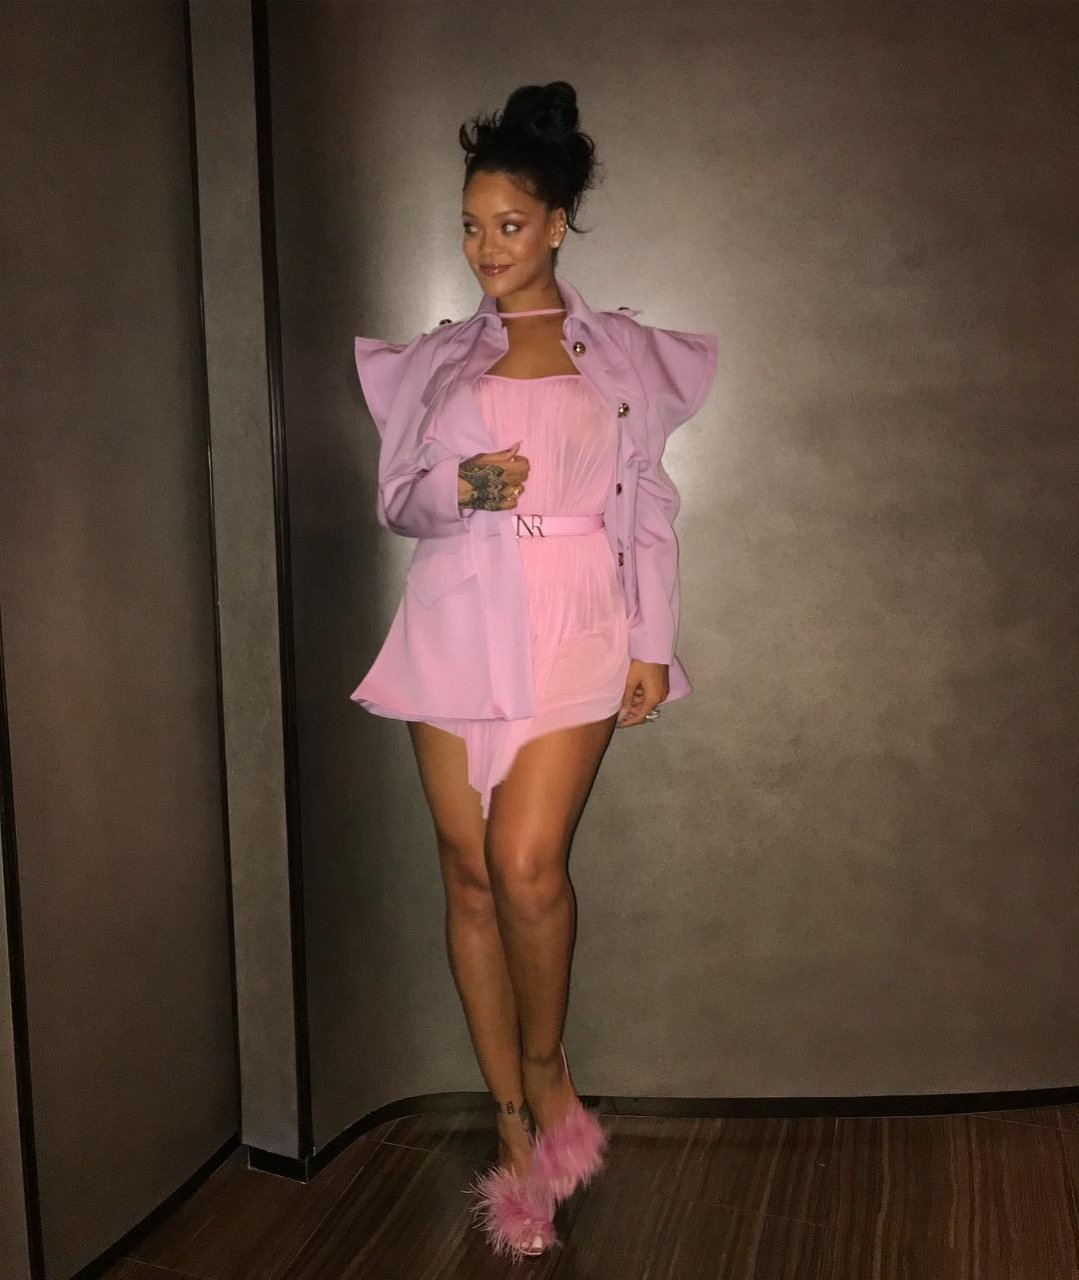 Rihanna See Through (3 Photos)